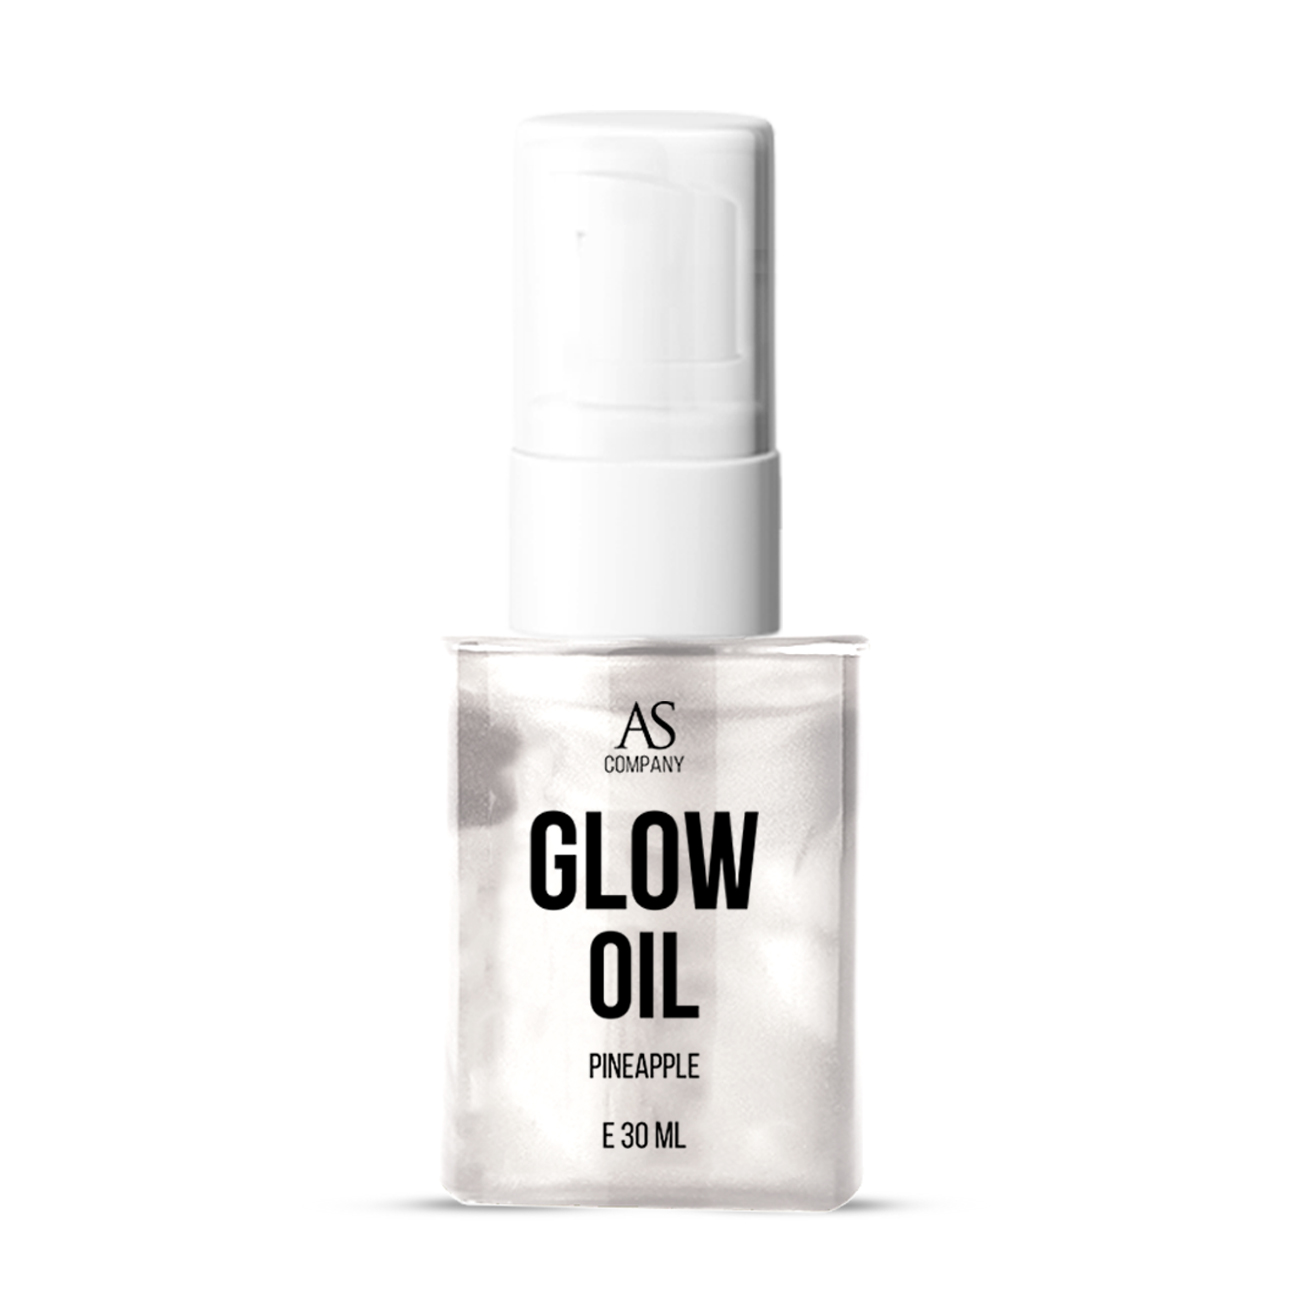 Фото масло AS Company (Алина Шахова) - Glow Oil аромат ананас, 15мл